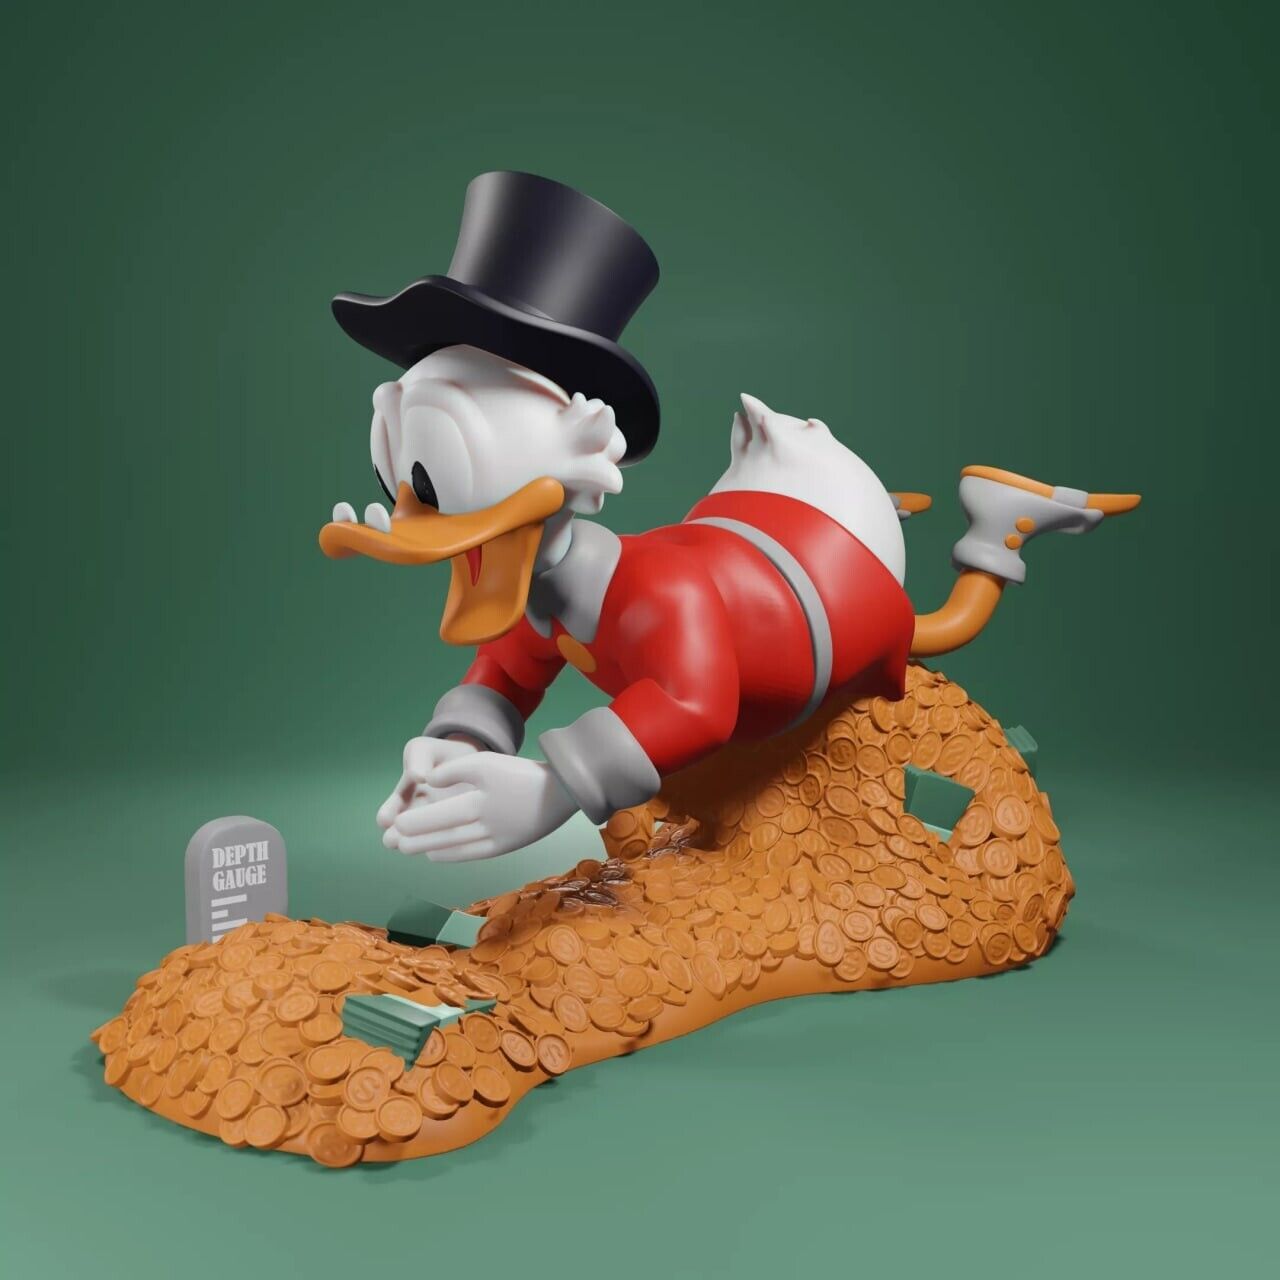 UNPAINTED Uncle Scrooge McDuck Diorama 3d Printed Model Kit